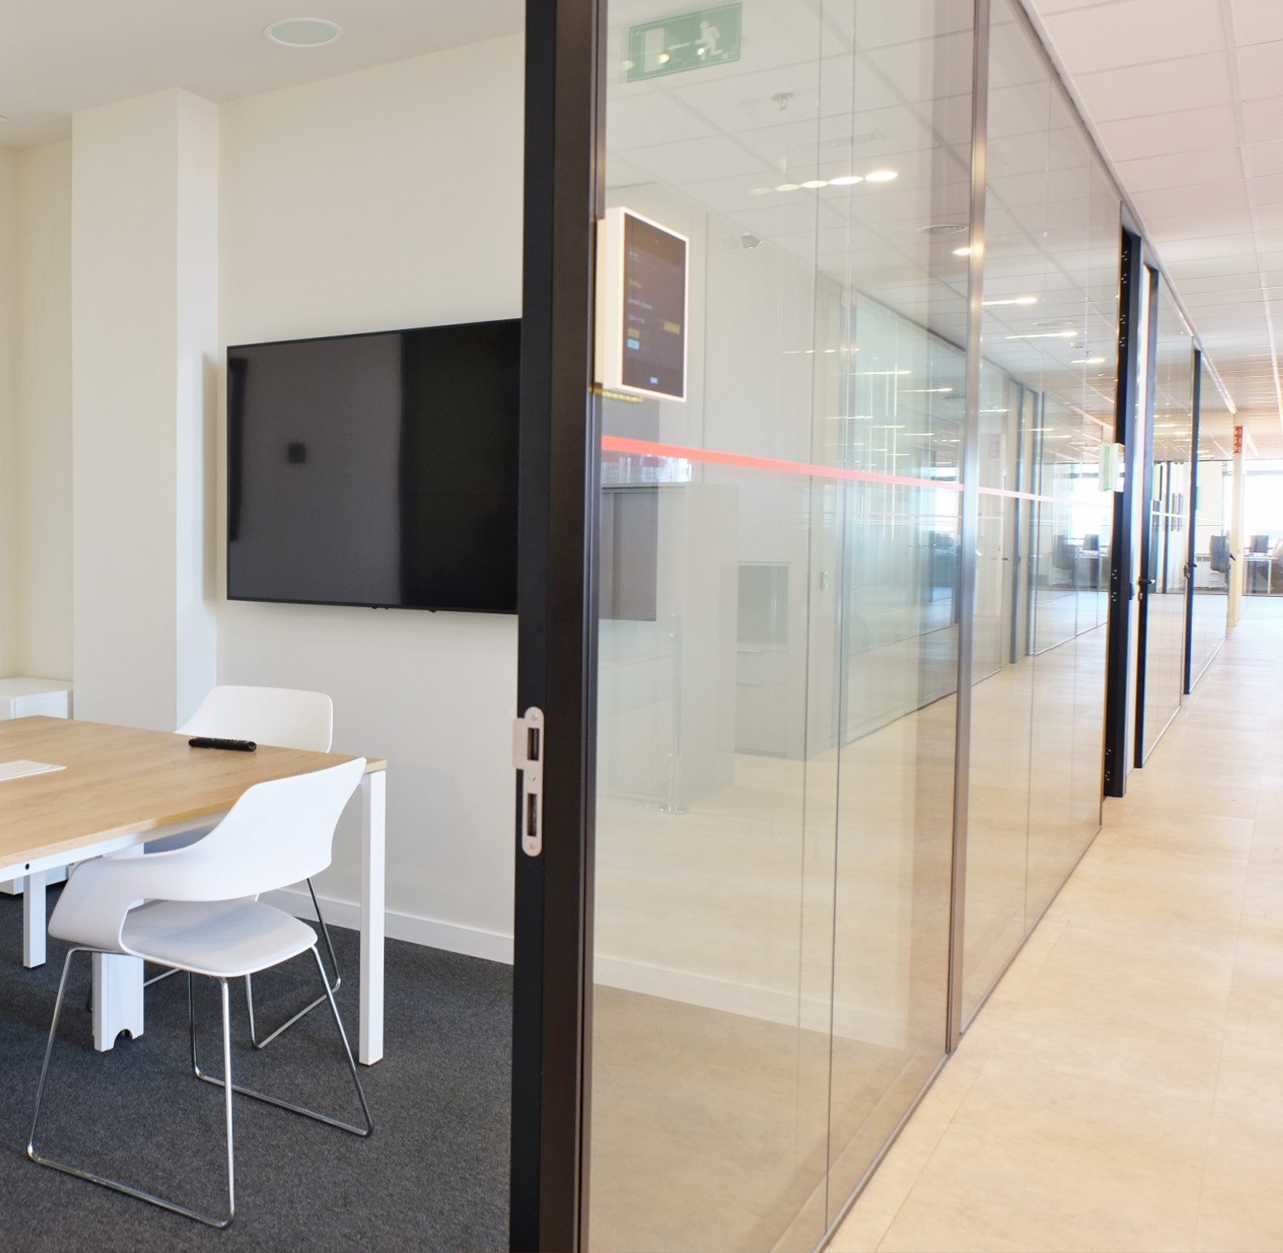 Inology equipa las salas de reuniones de sus nuevas oficinas de Terrassa con soluciones AV  